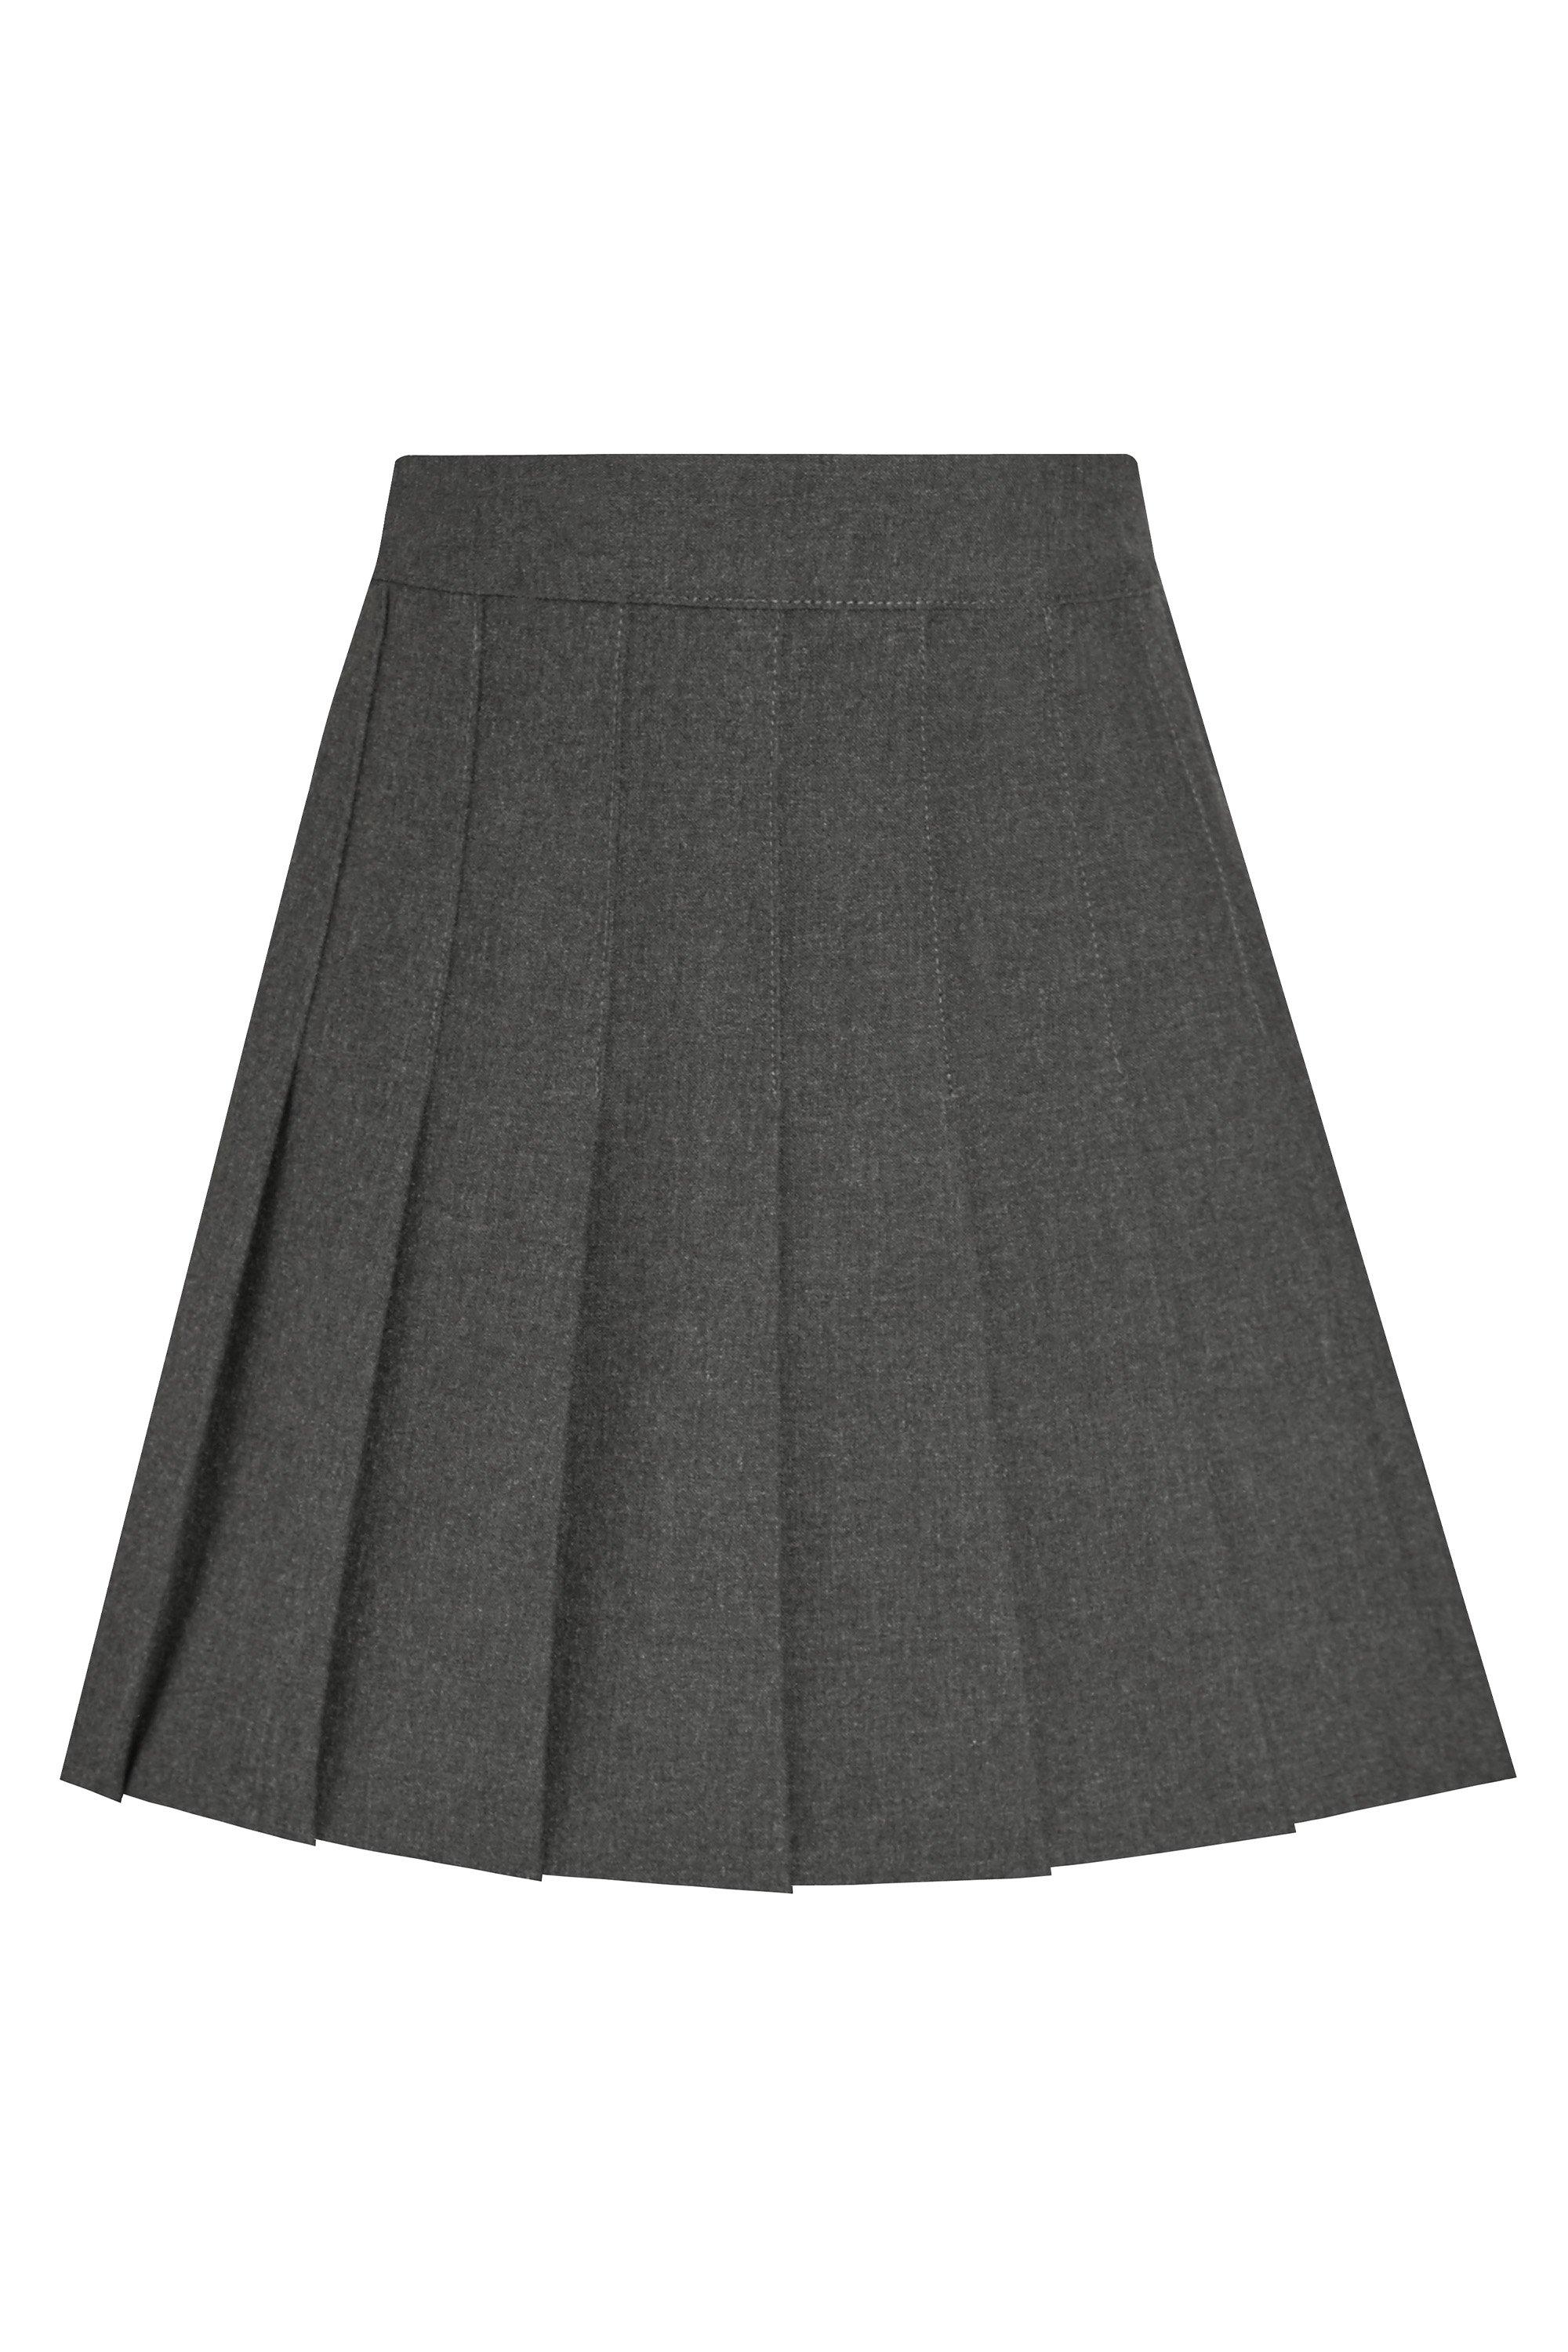 Плиссированная школьная юбка David Luke, серый плиссированная юбка с высокой талией для девочек y2k весна и осень повседневная милая клетчатая юбка а силуэта японская школьная форма мин